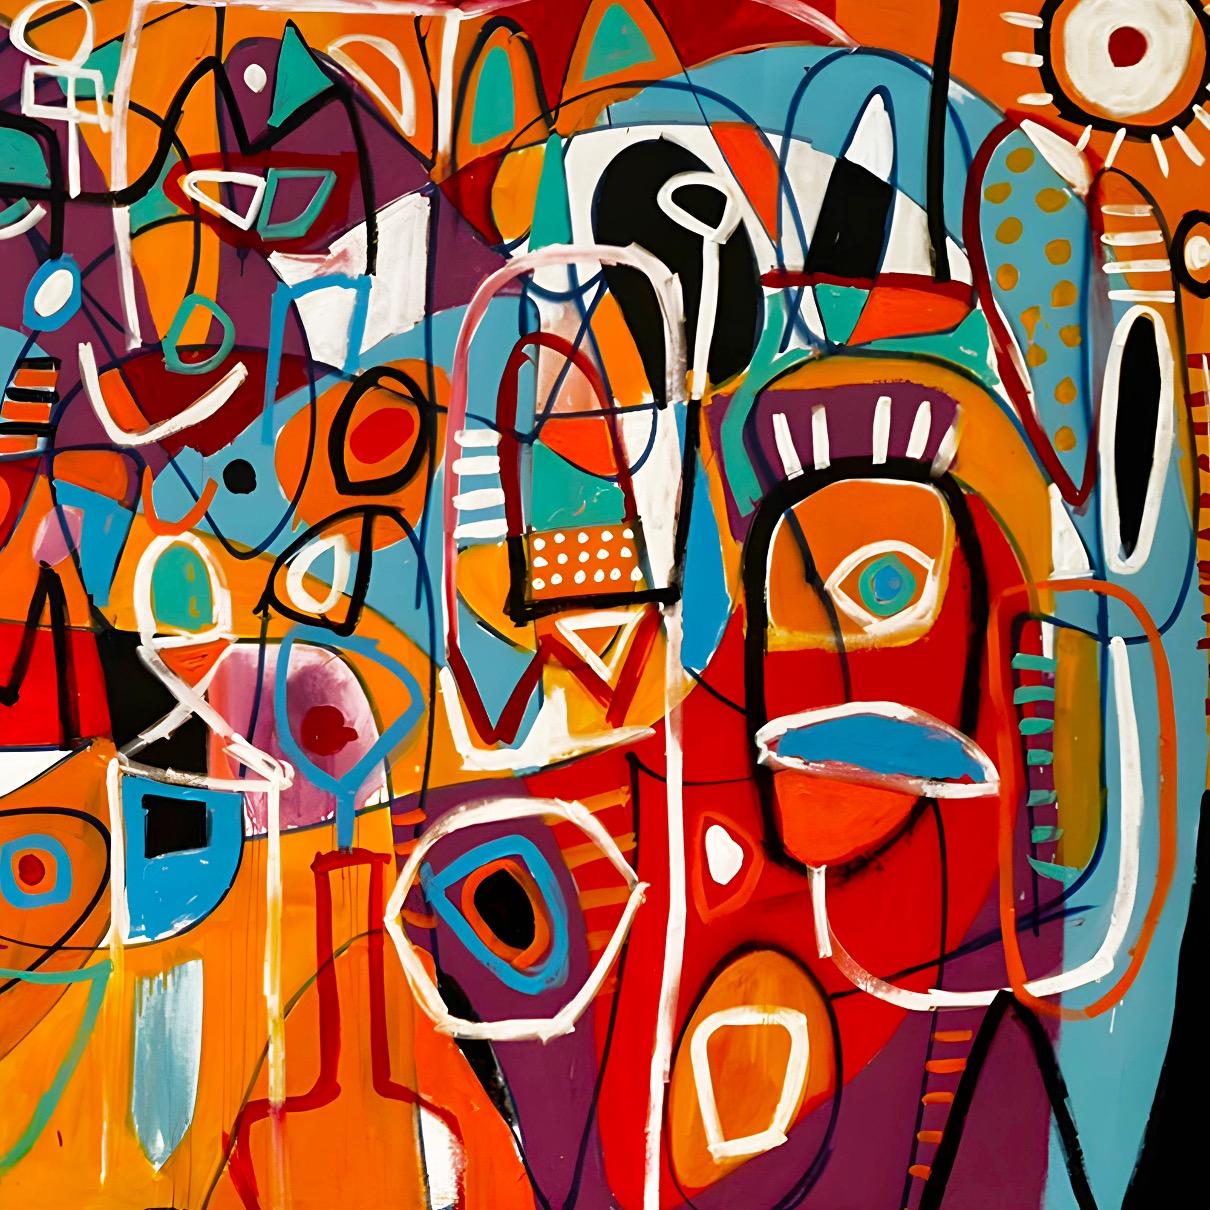 Art contemporain, peinture abstraite
Acrylique sur toile
210x500cm
Signé 
LIVRAISON GRATUITE ROLLE


A propos de l'artiste
Enrique Pichardo (Mexico, 1973) est diplômé de l'Escuela Nacional de Pintura, Escultura y Grabado (ENPEG) 